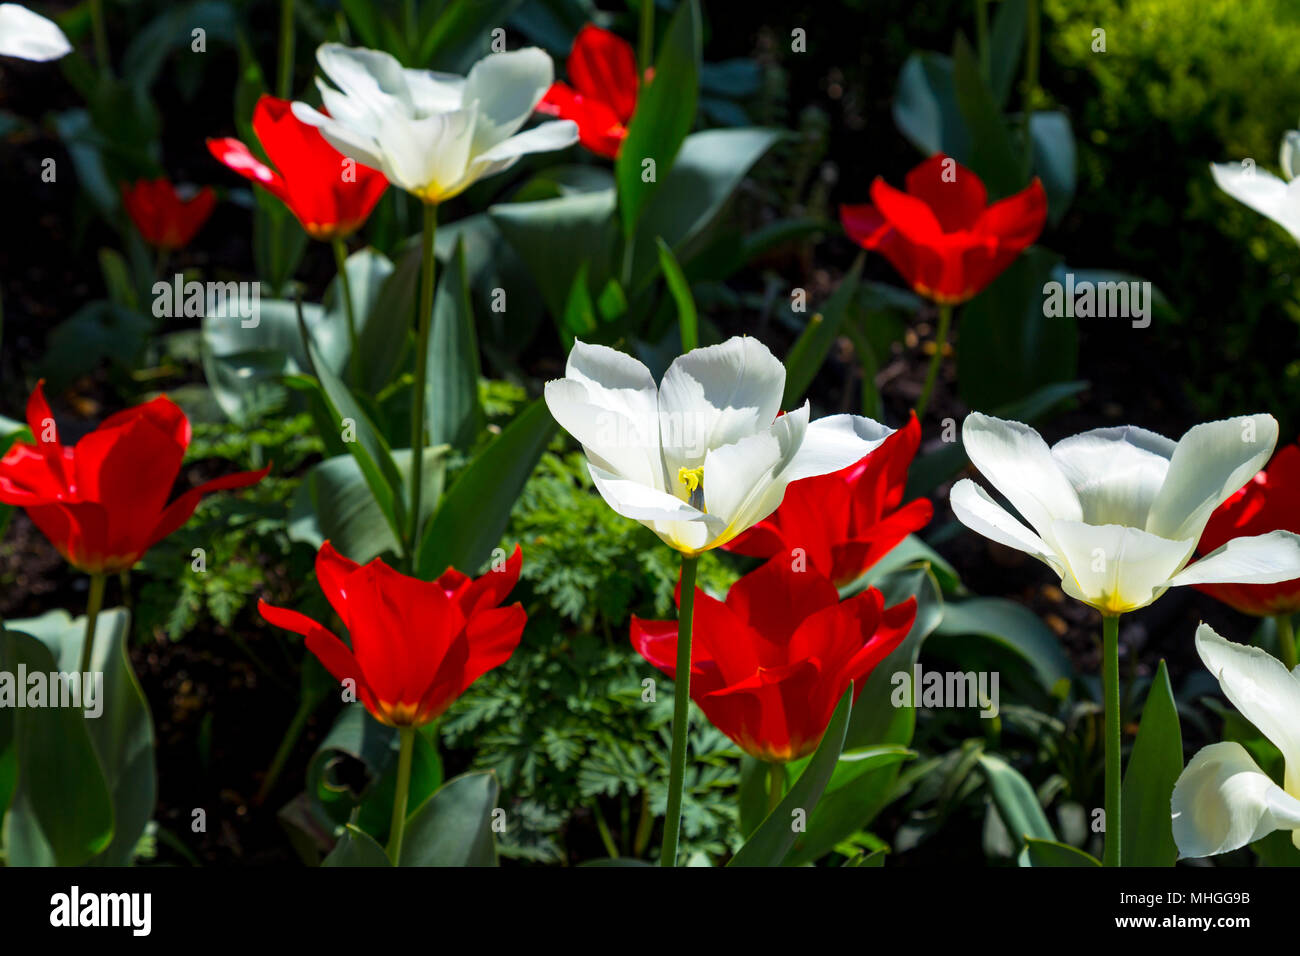 Ouvrir les tulipes rouges et blanches au printemps, London, UK Banque D'Images